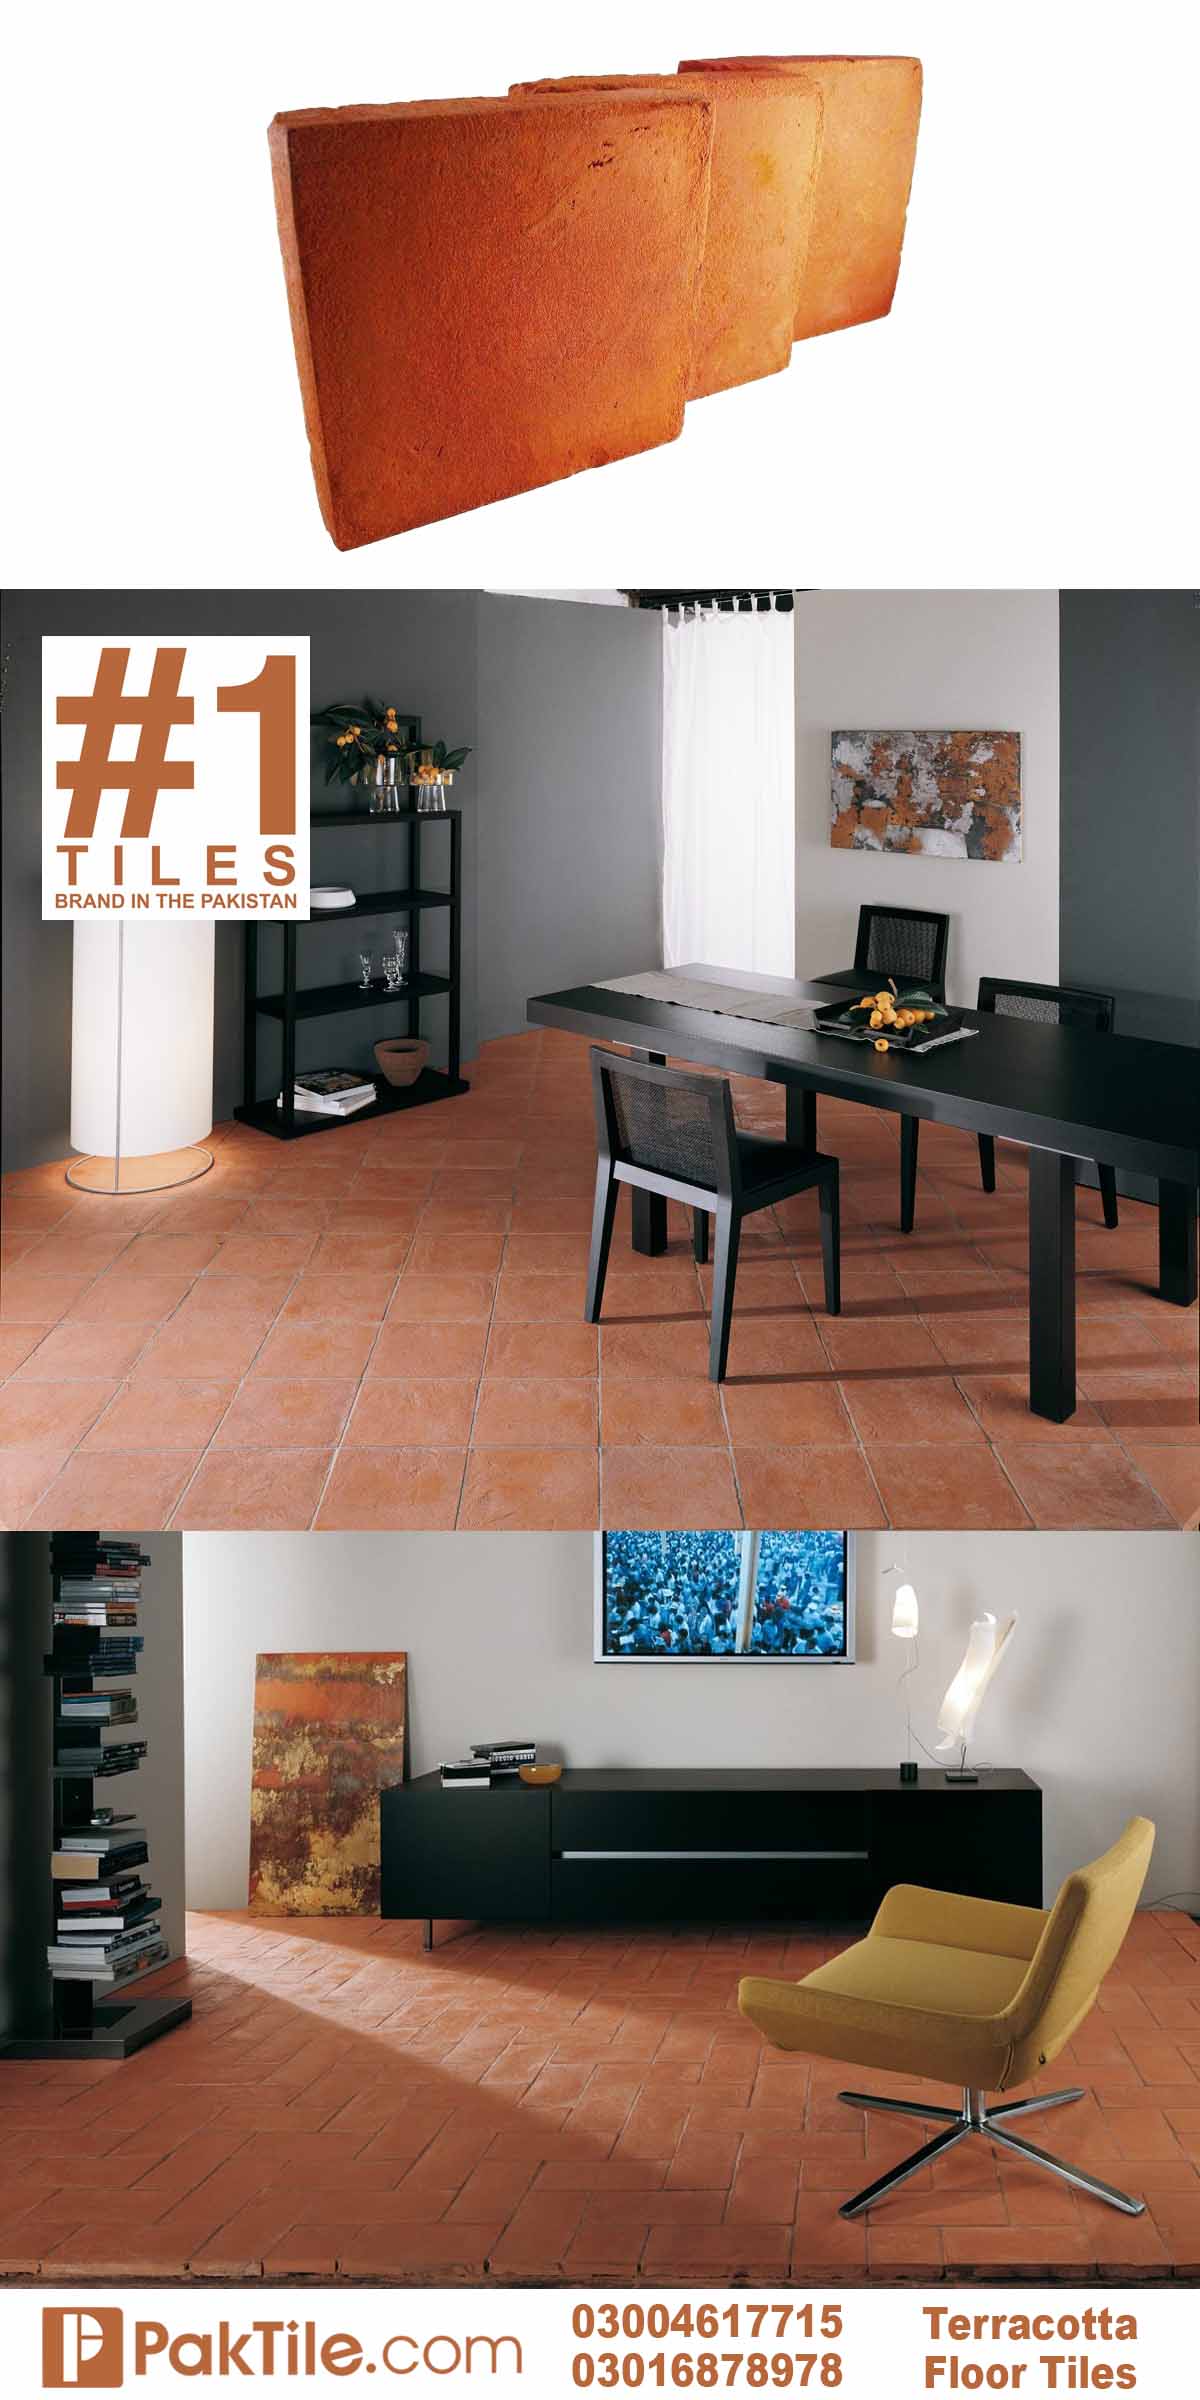 Brick flooring tiles indoor